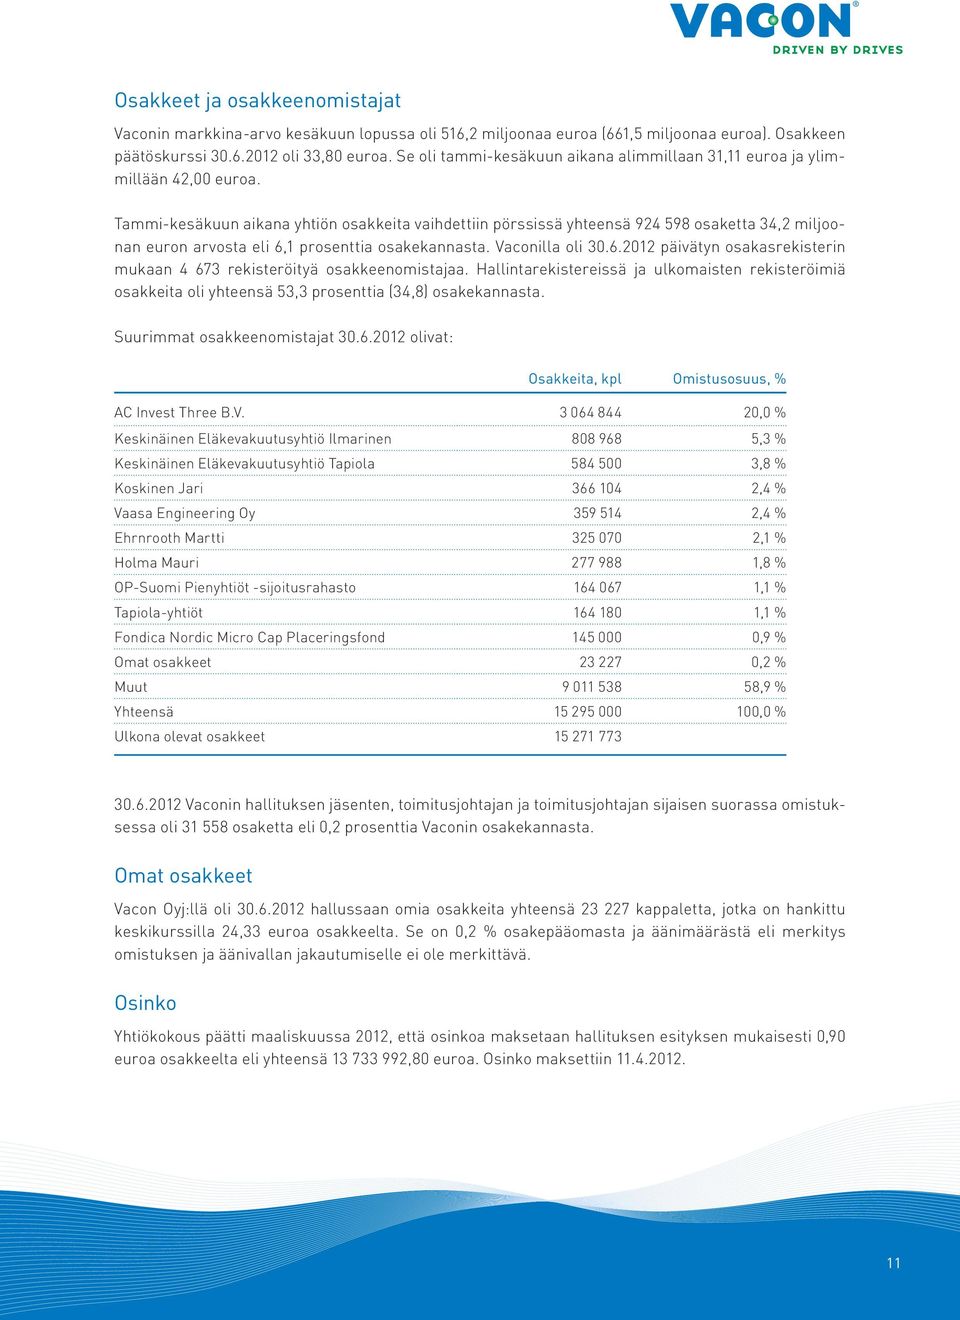 Tammi-kesäkuun aikana yhtiön osakkeita vaihdettiin pörssissä yhteensä 924 598 osaketta 34,2 miljoonan euron arvosta eli 6,1 prosenttia osakekannasta. Vaconilla oli 30.6.2012 päivätyn osakasrekisterin mukaan 4 673 rekisteröityä osakkeenomistajaa.